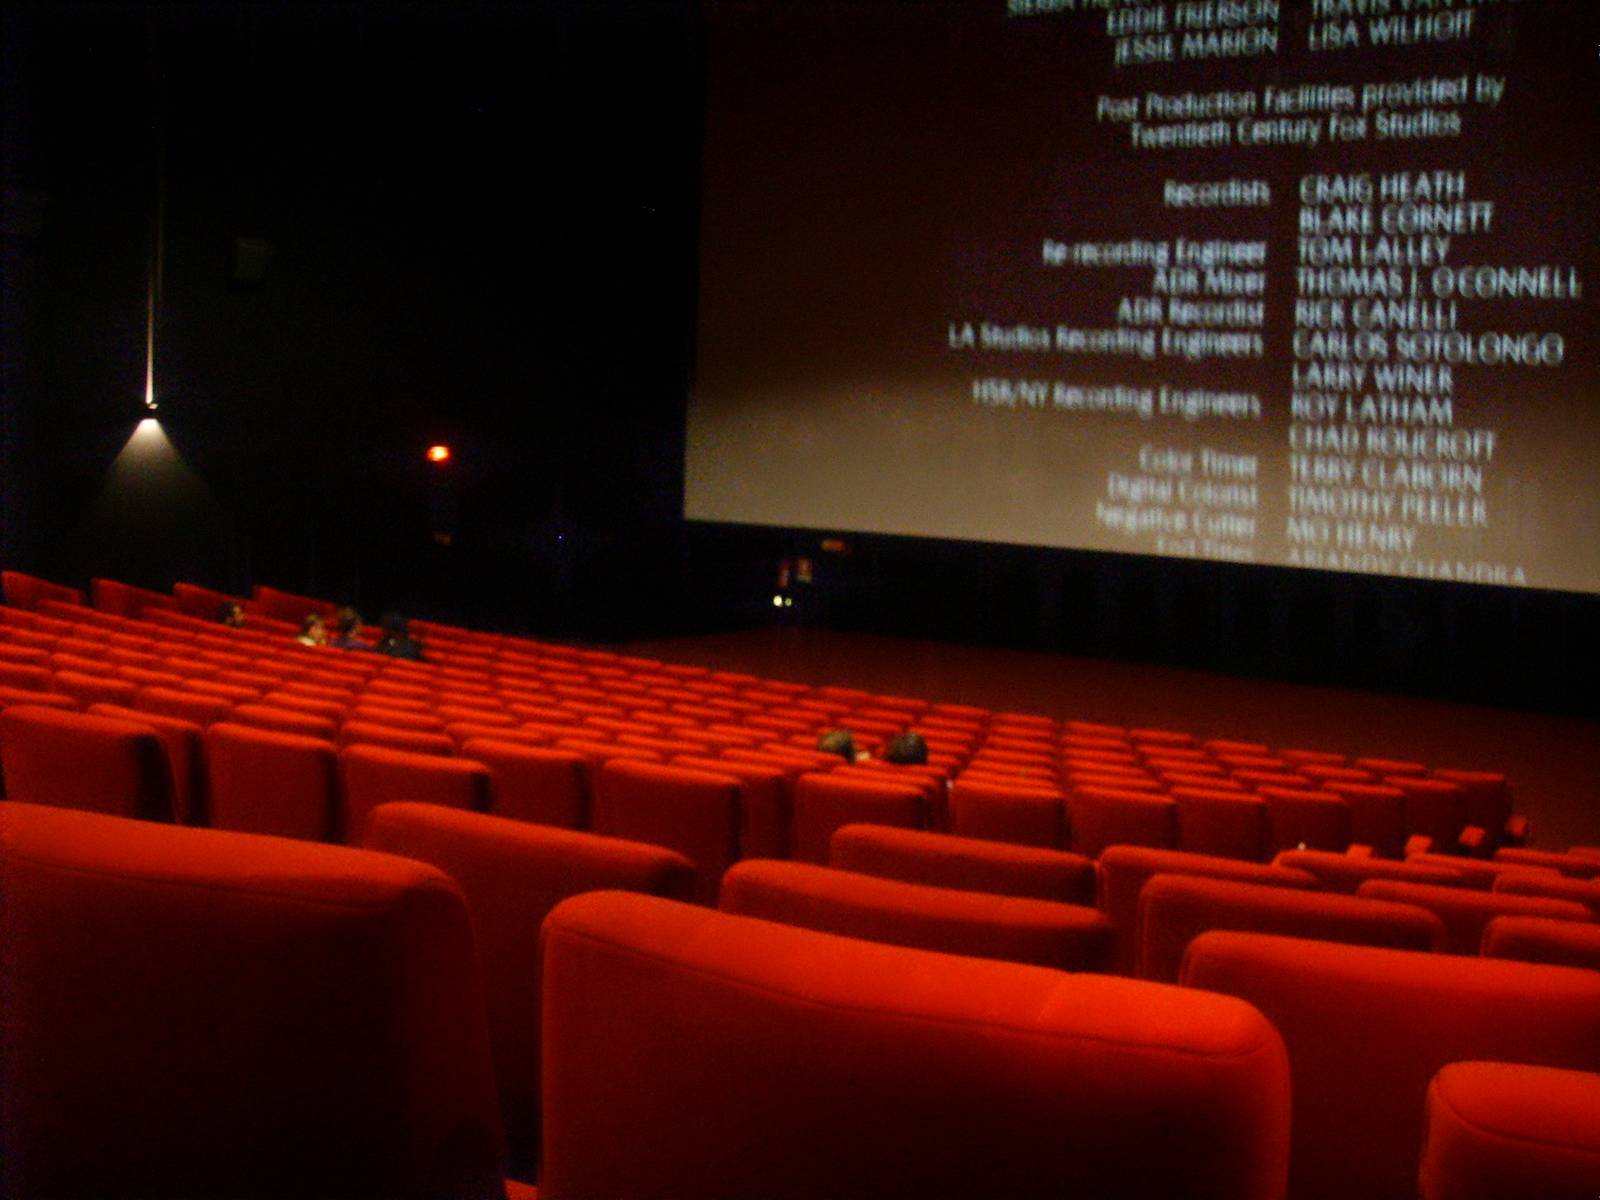     L’Assemblée Nationale adopte la proposition de loi sur les cinémas Outre-Mer

